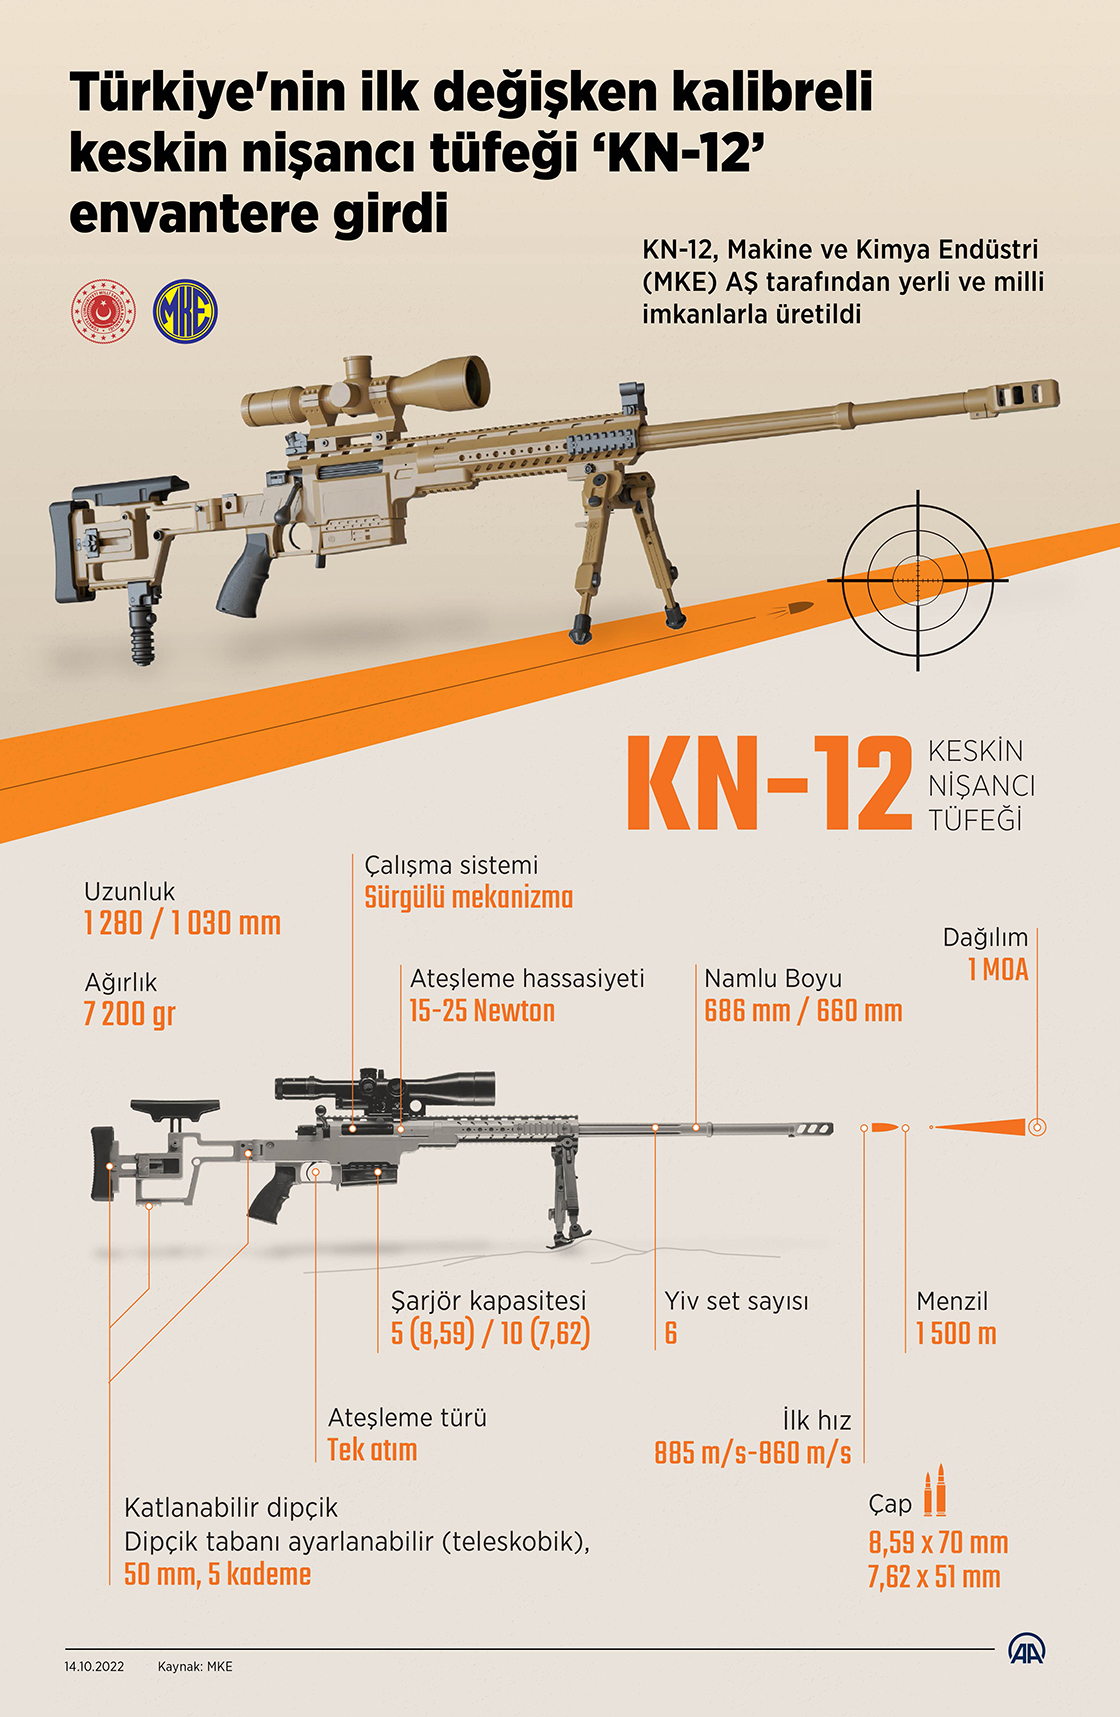 Türkiye'nin ilk değişken kalibreli keskin nişancı tüfeği KN-12 envantere girdi